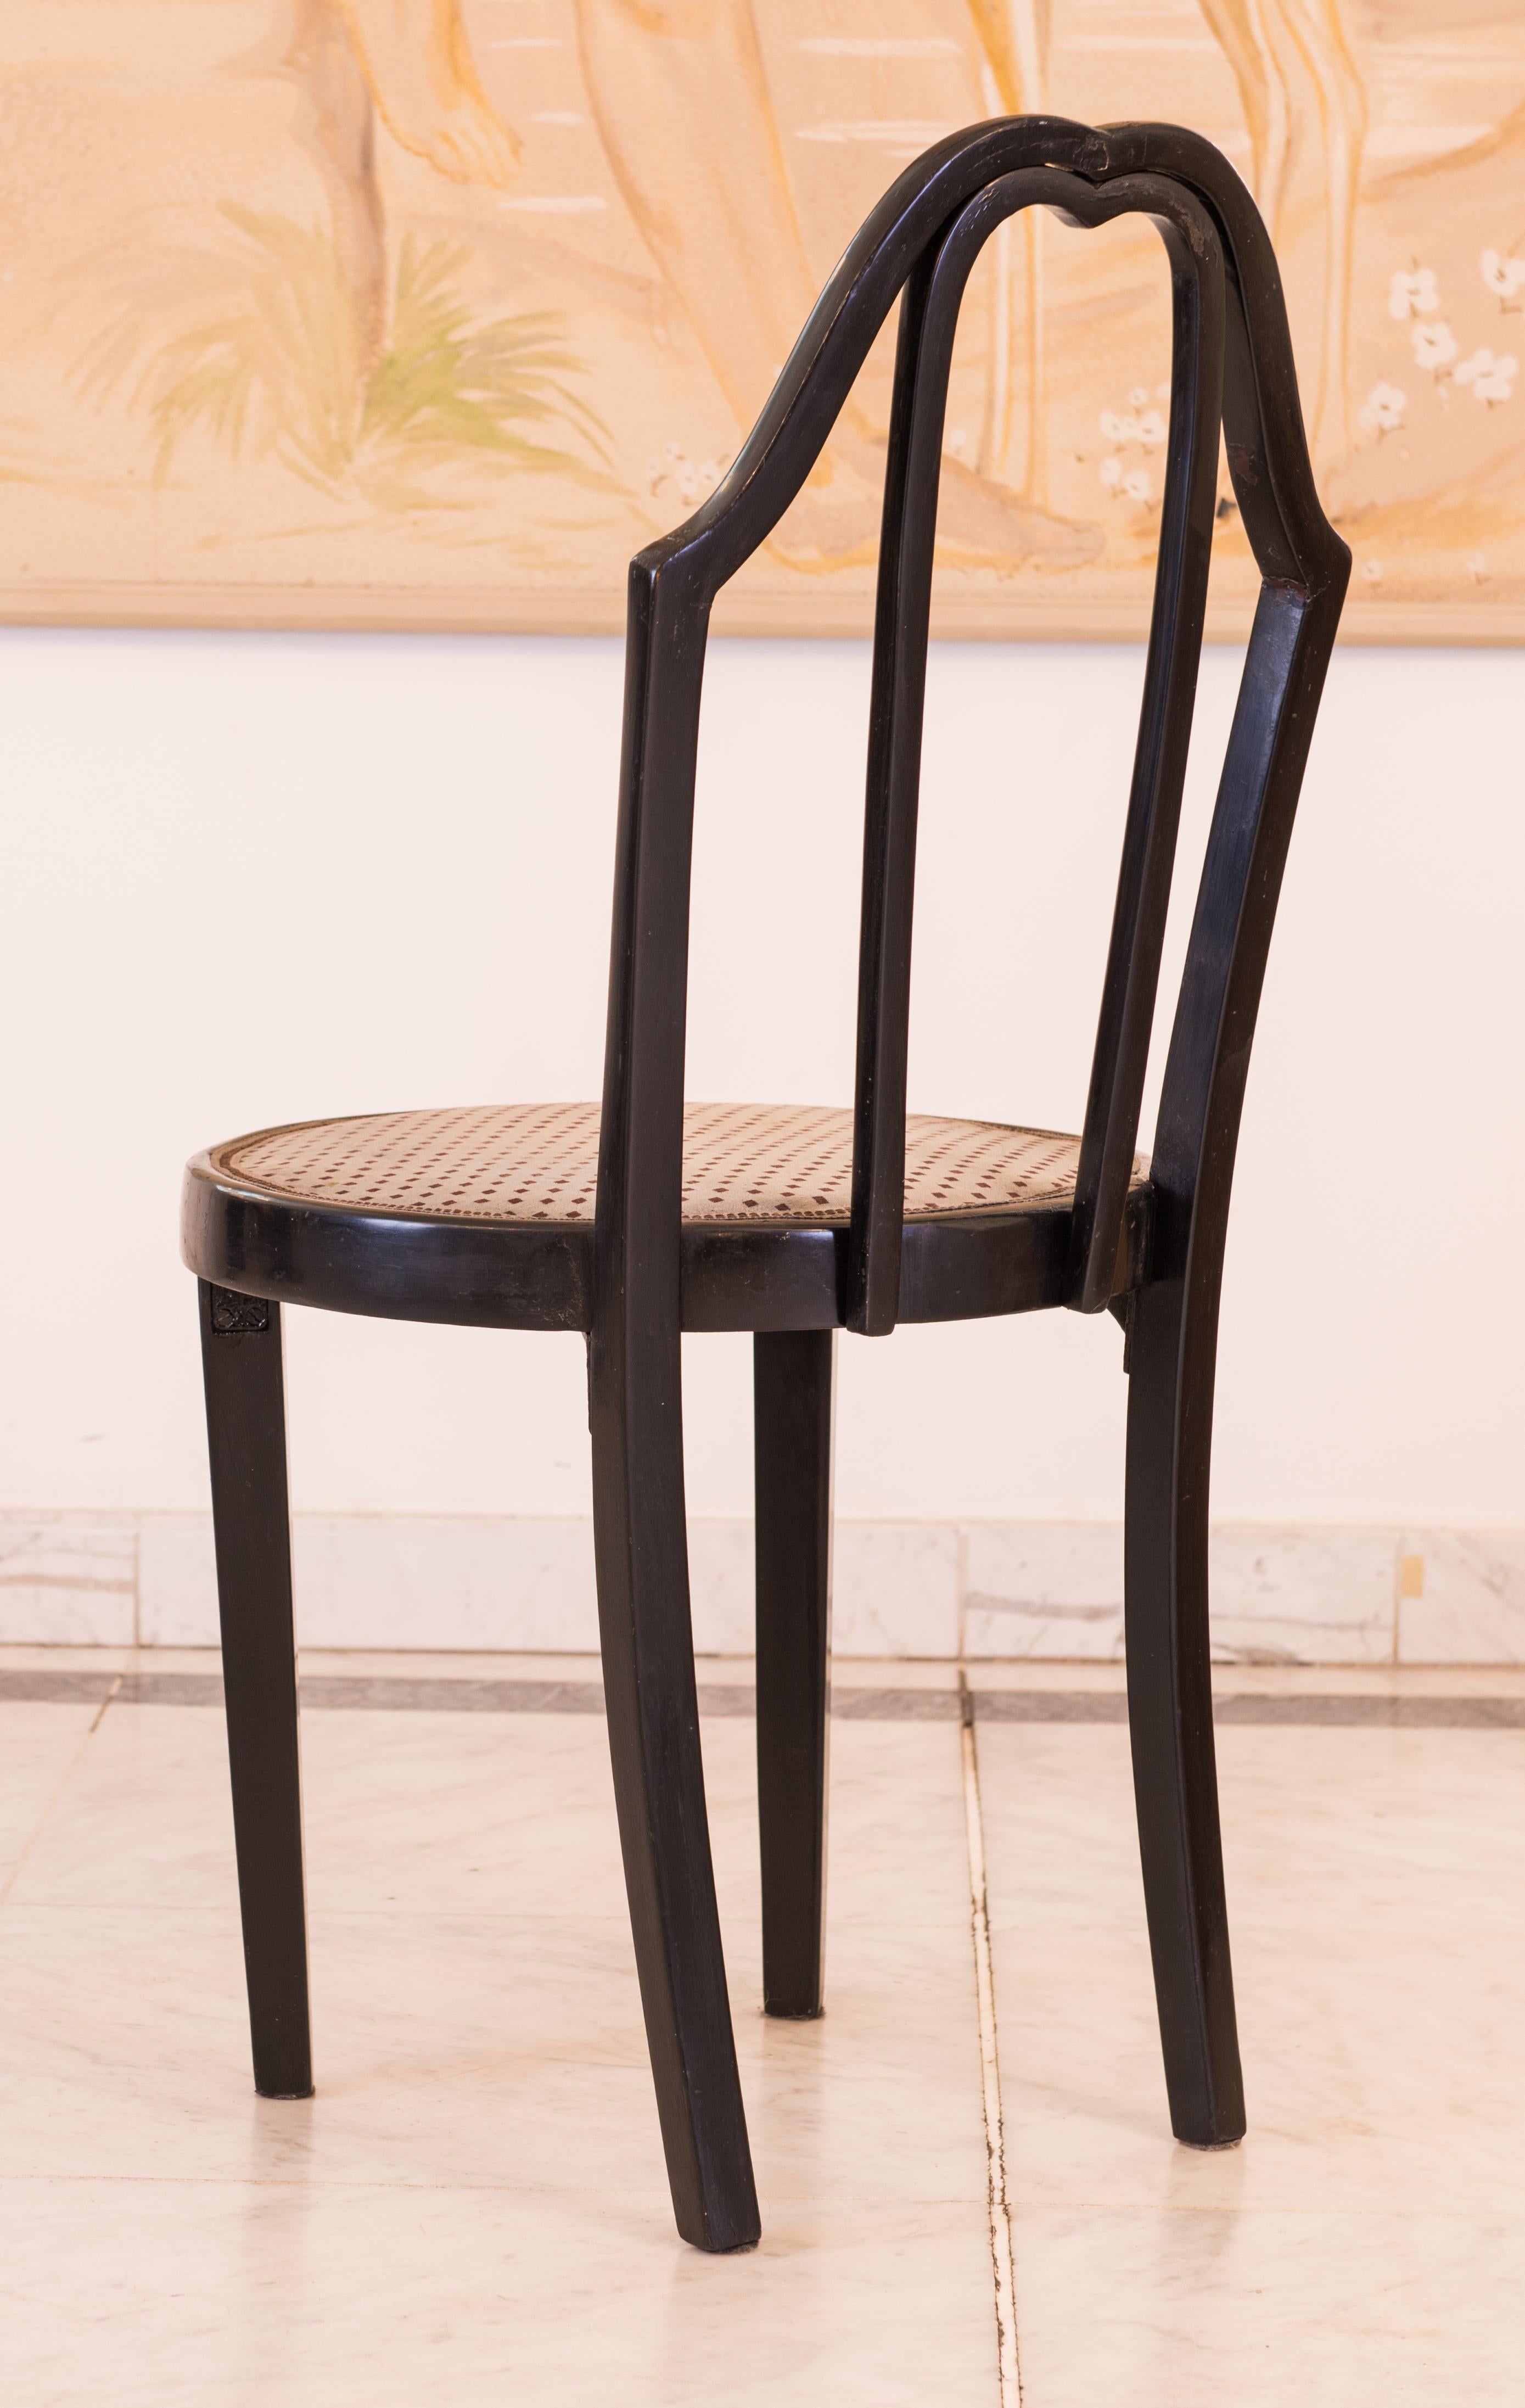 Äußerst seltener Stuhl aus dem Grabenkaffehaus, Wien 1, Graben 29a - Trattnerhof

Gebeiztes und poliertes Buchenholz, Polsterung nicht original